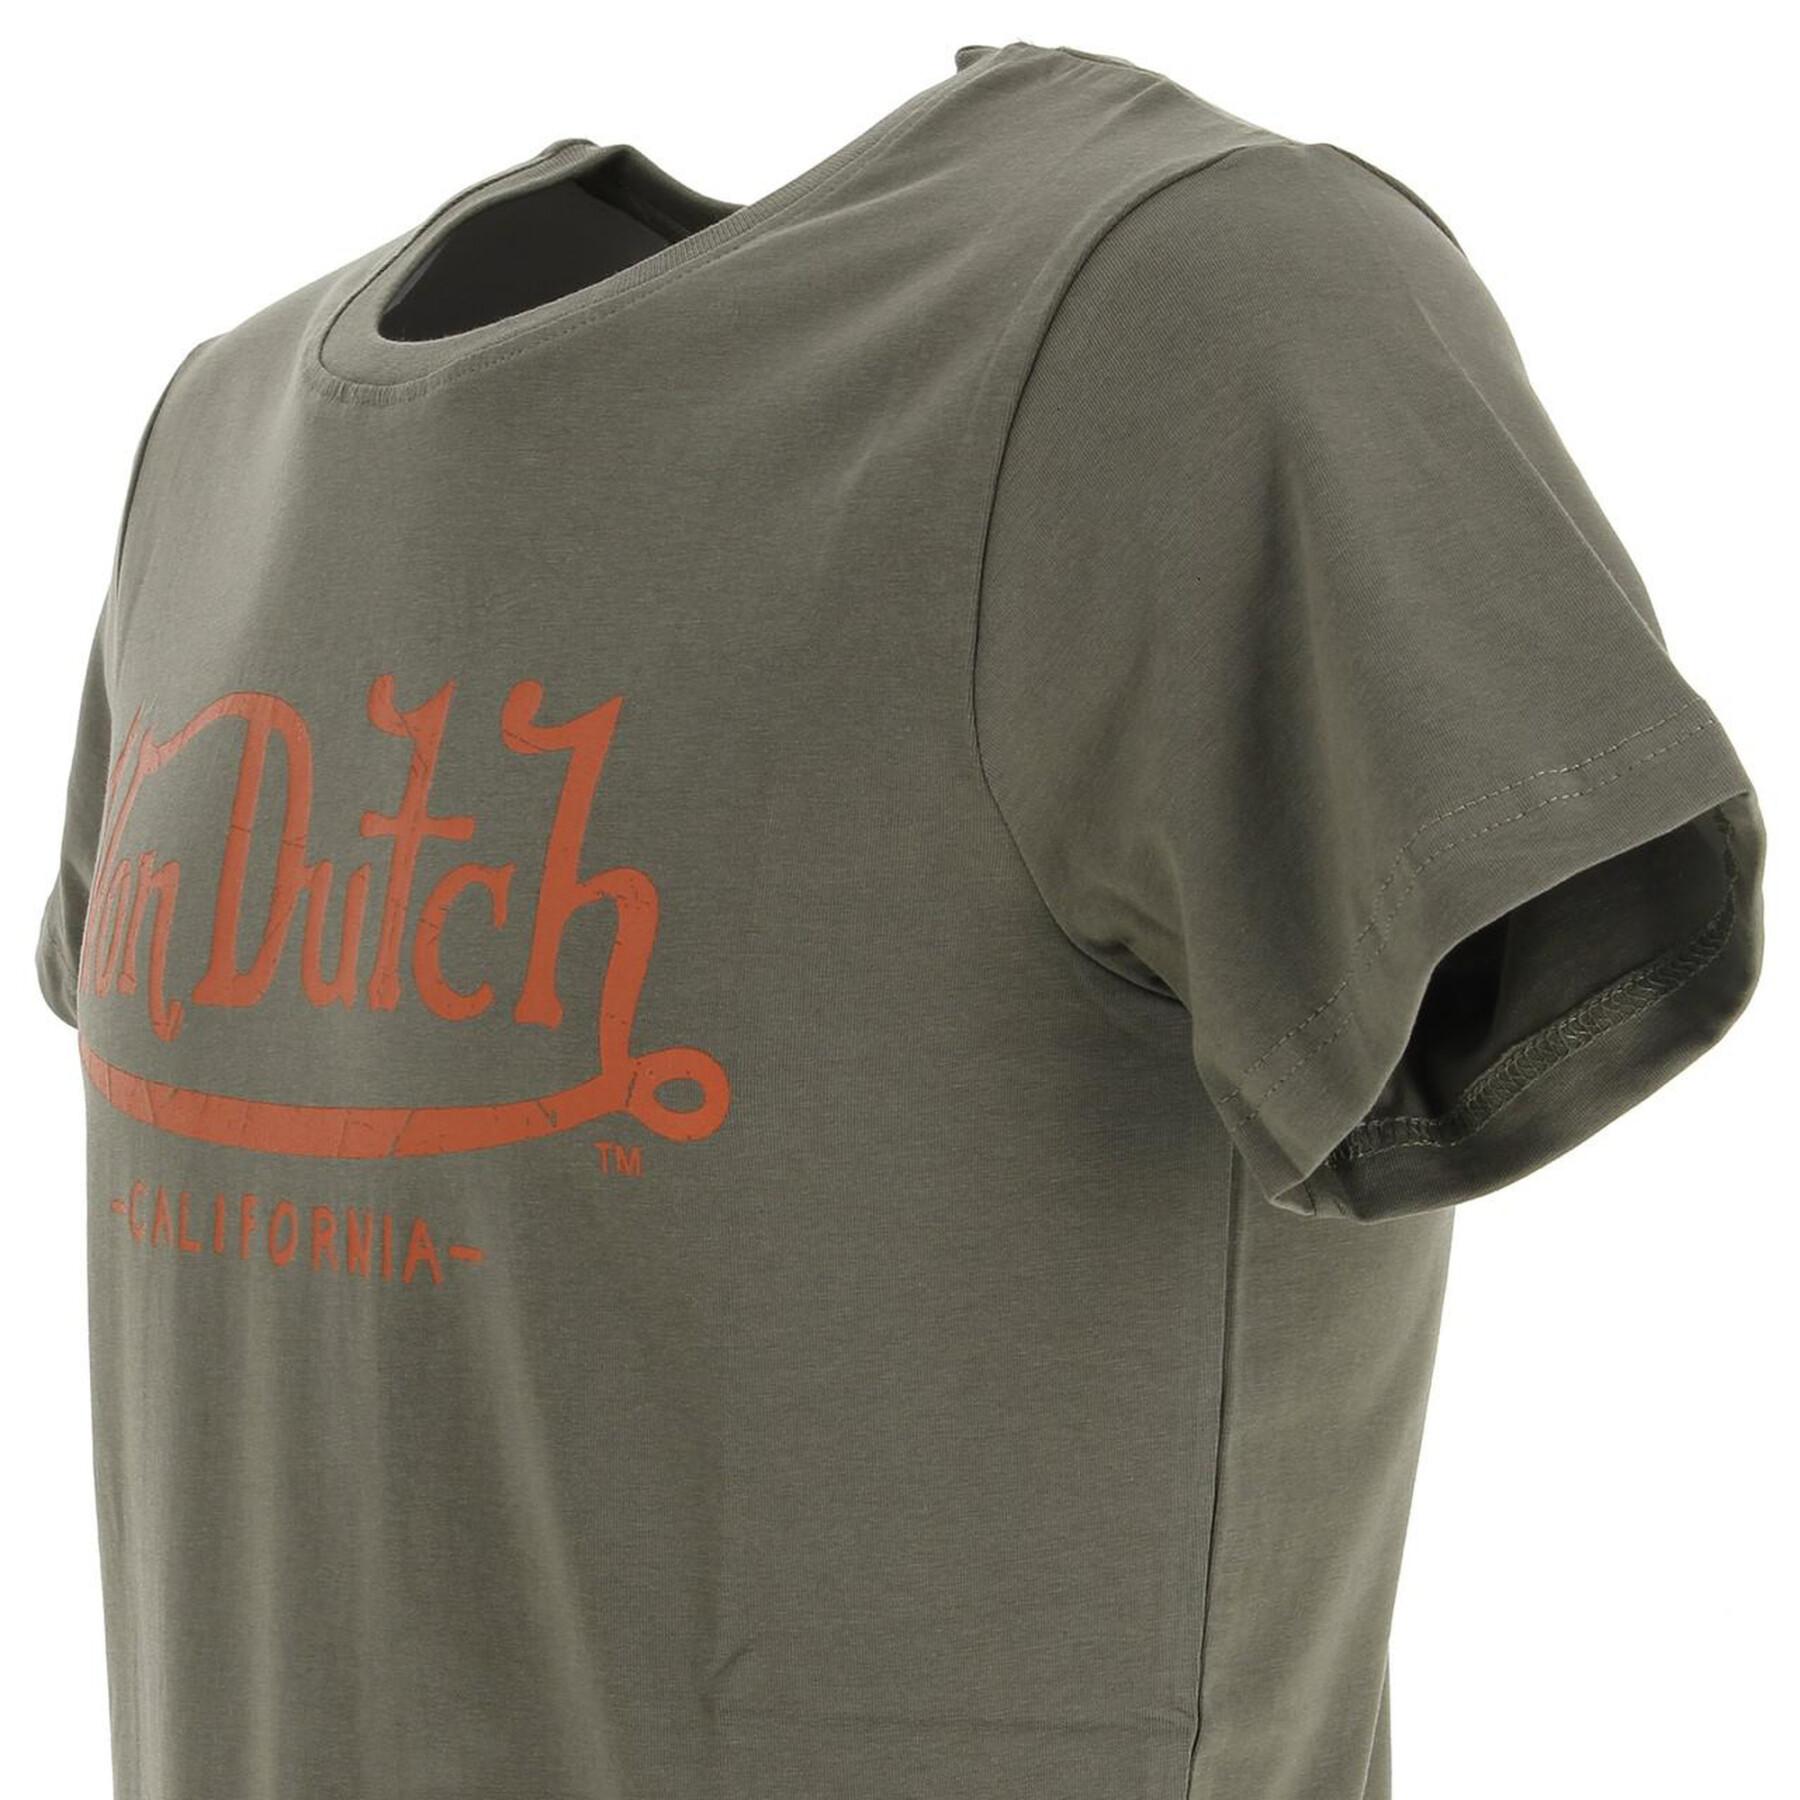 T-shirt Von Dutch Life Ko